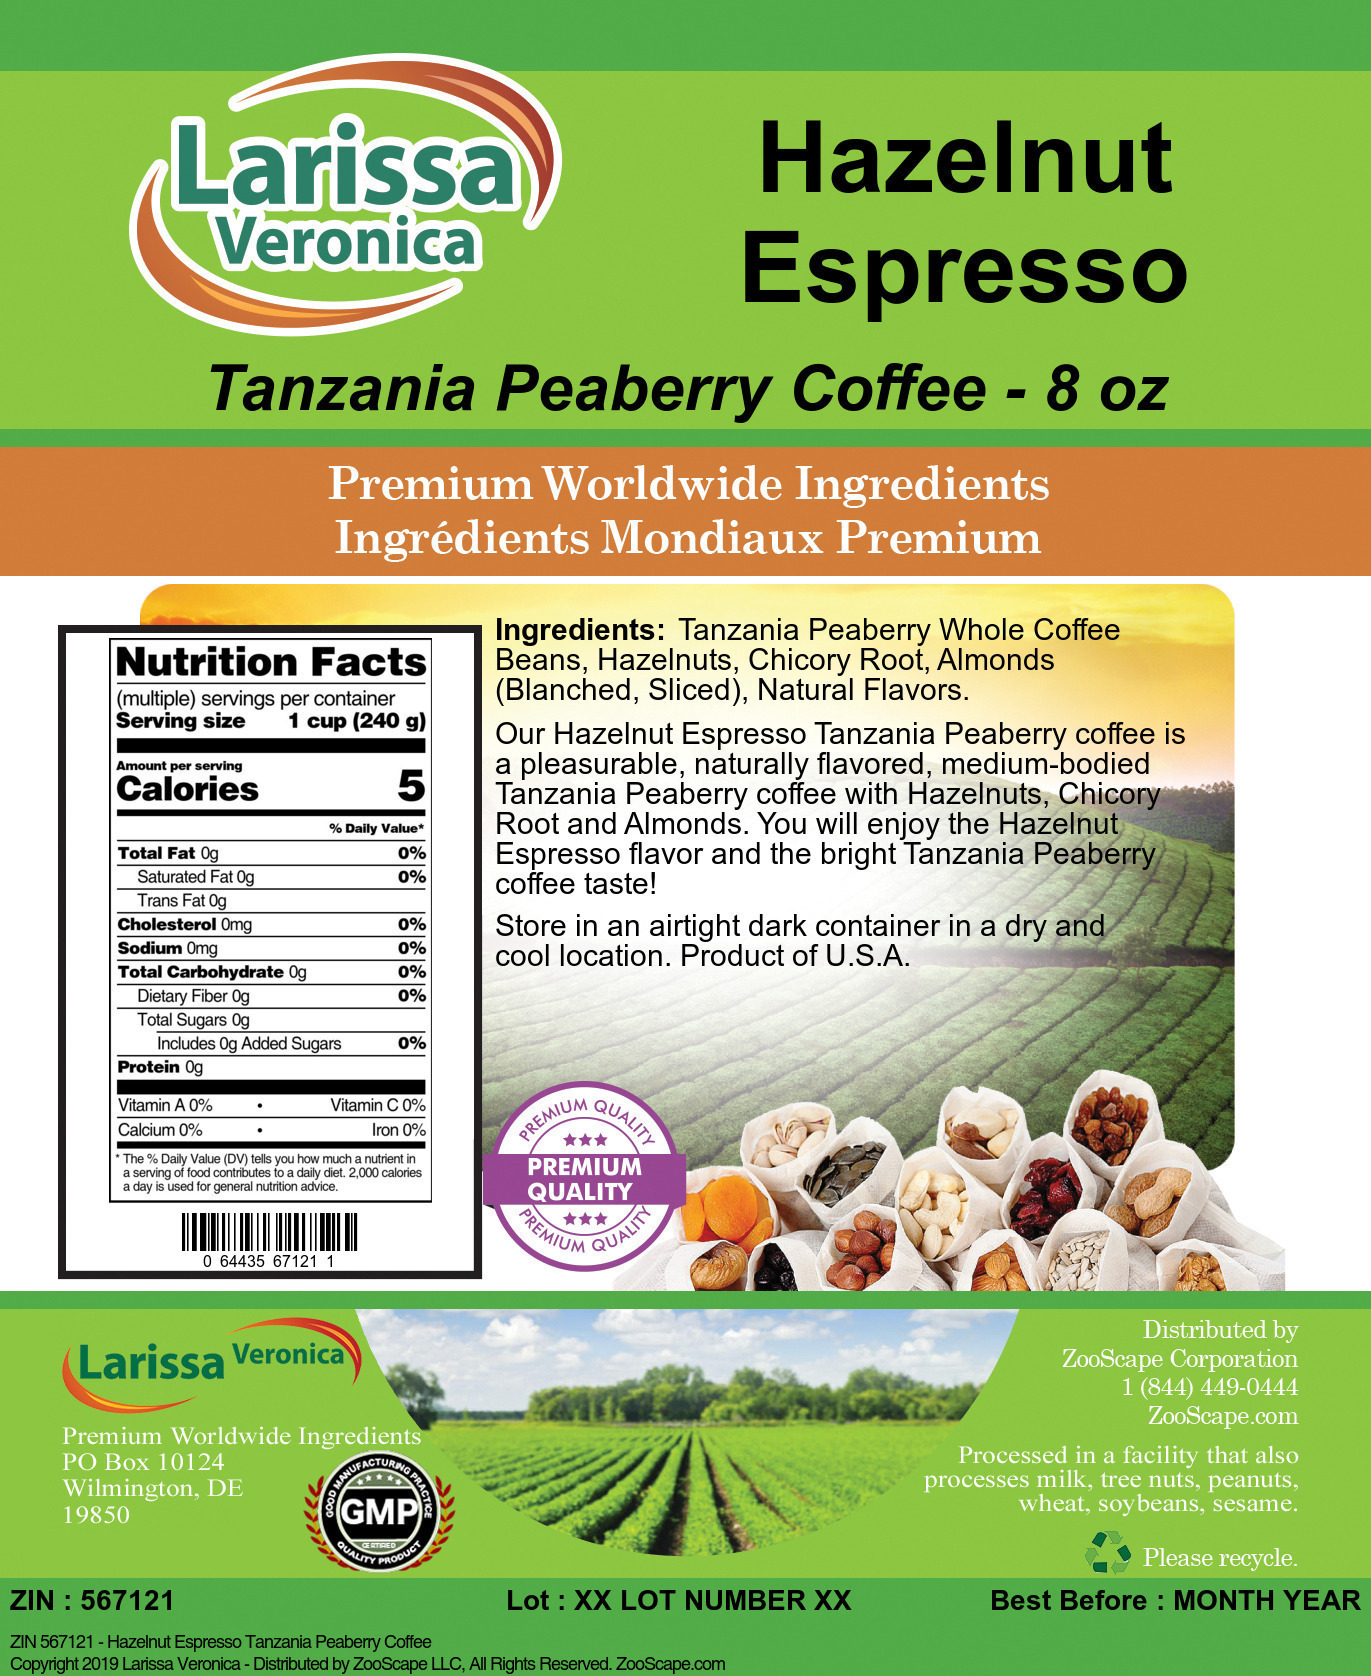 Hazelnut Espresso Tanzania Peaberry Coffee - Label